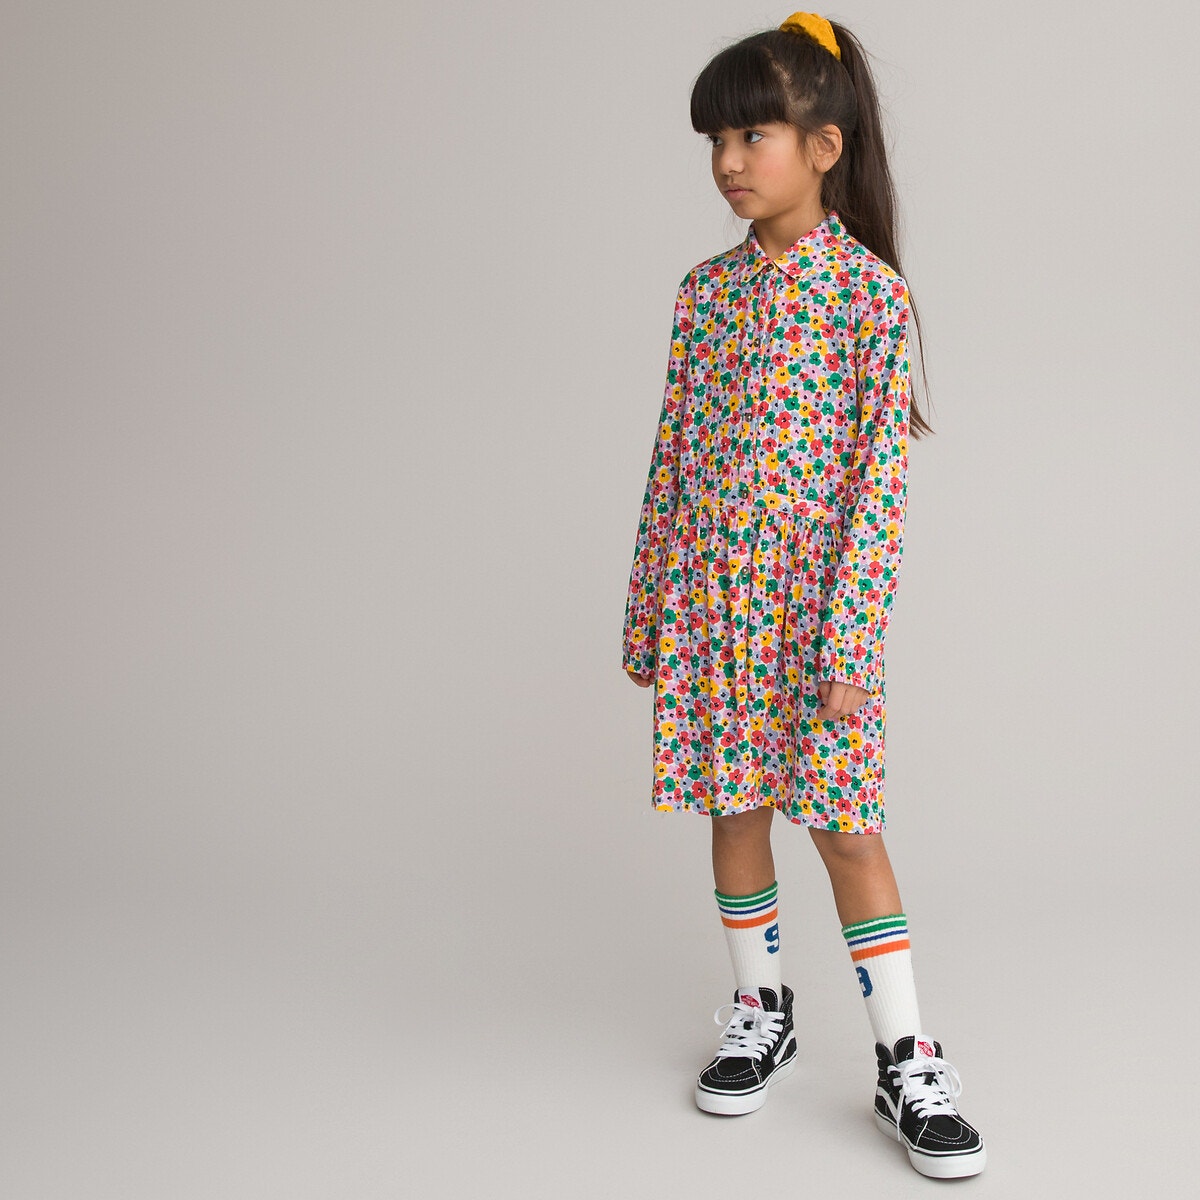 Μόδα > Παιδικά > Κορίτσι > Φορέματα Μακρυμάνικο φόρεμα με πολύχρωμο φλοράλ μοτίβο